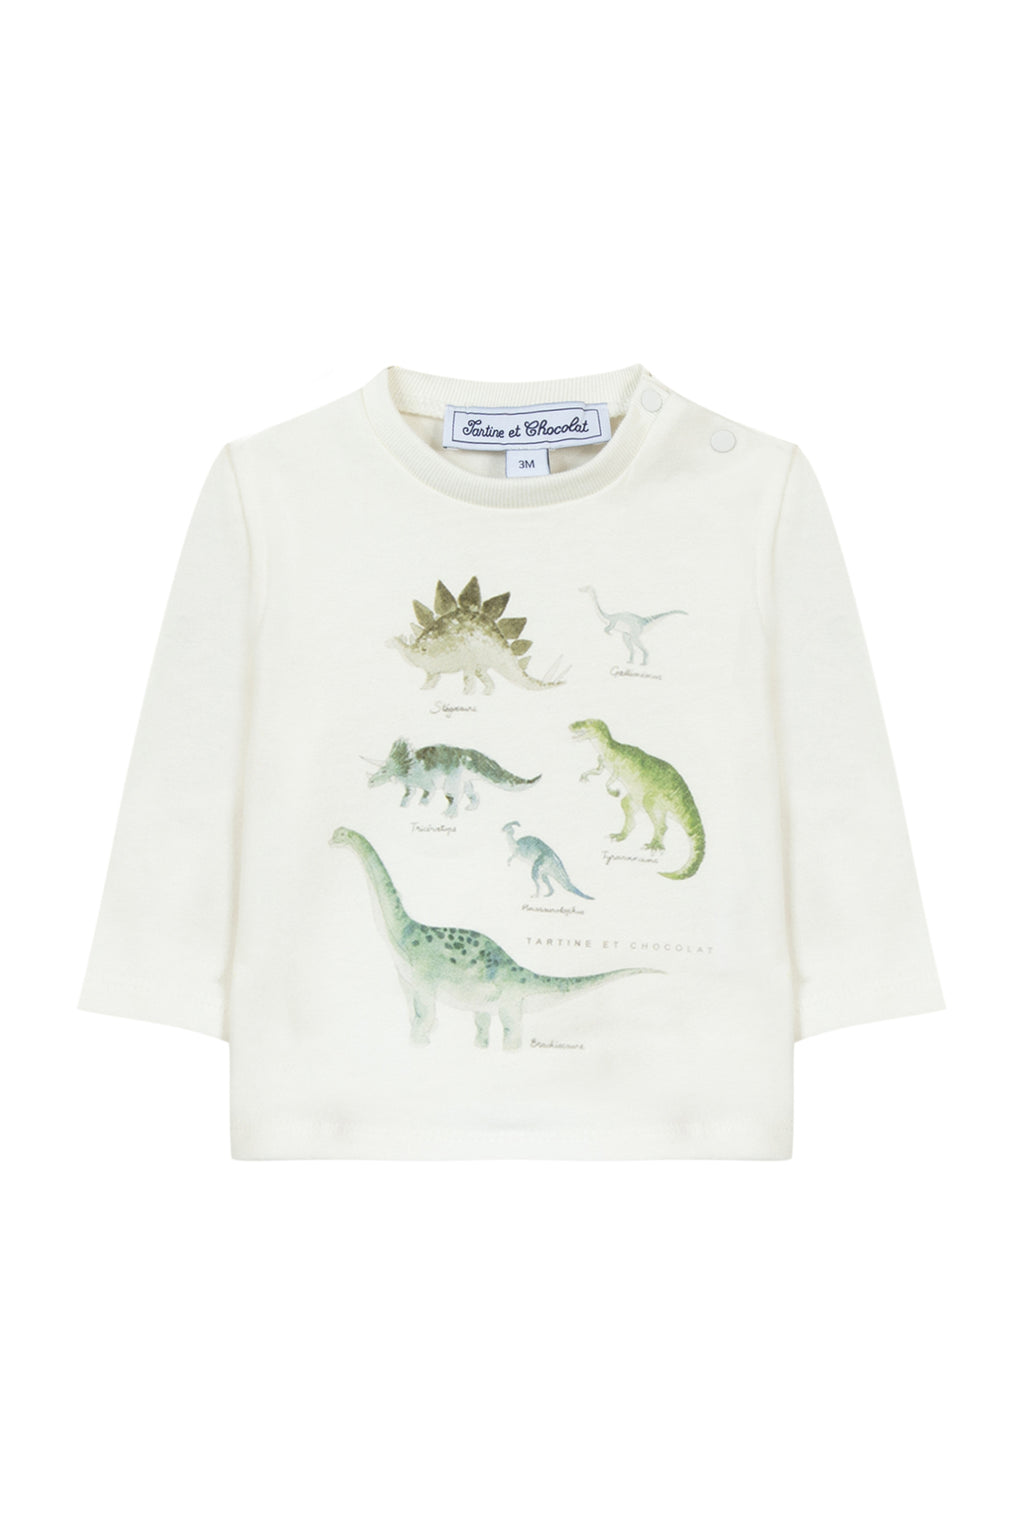 Tee-shirt - Jersey illustration dinosaure